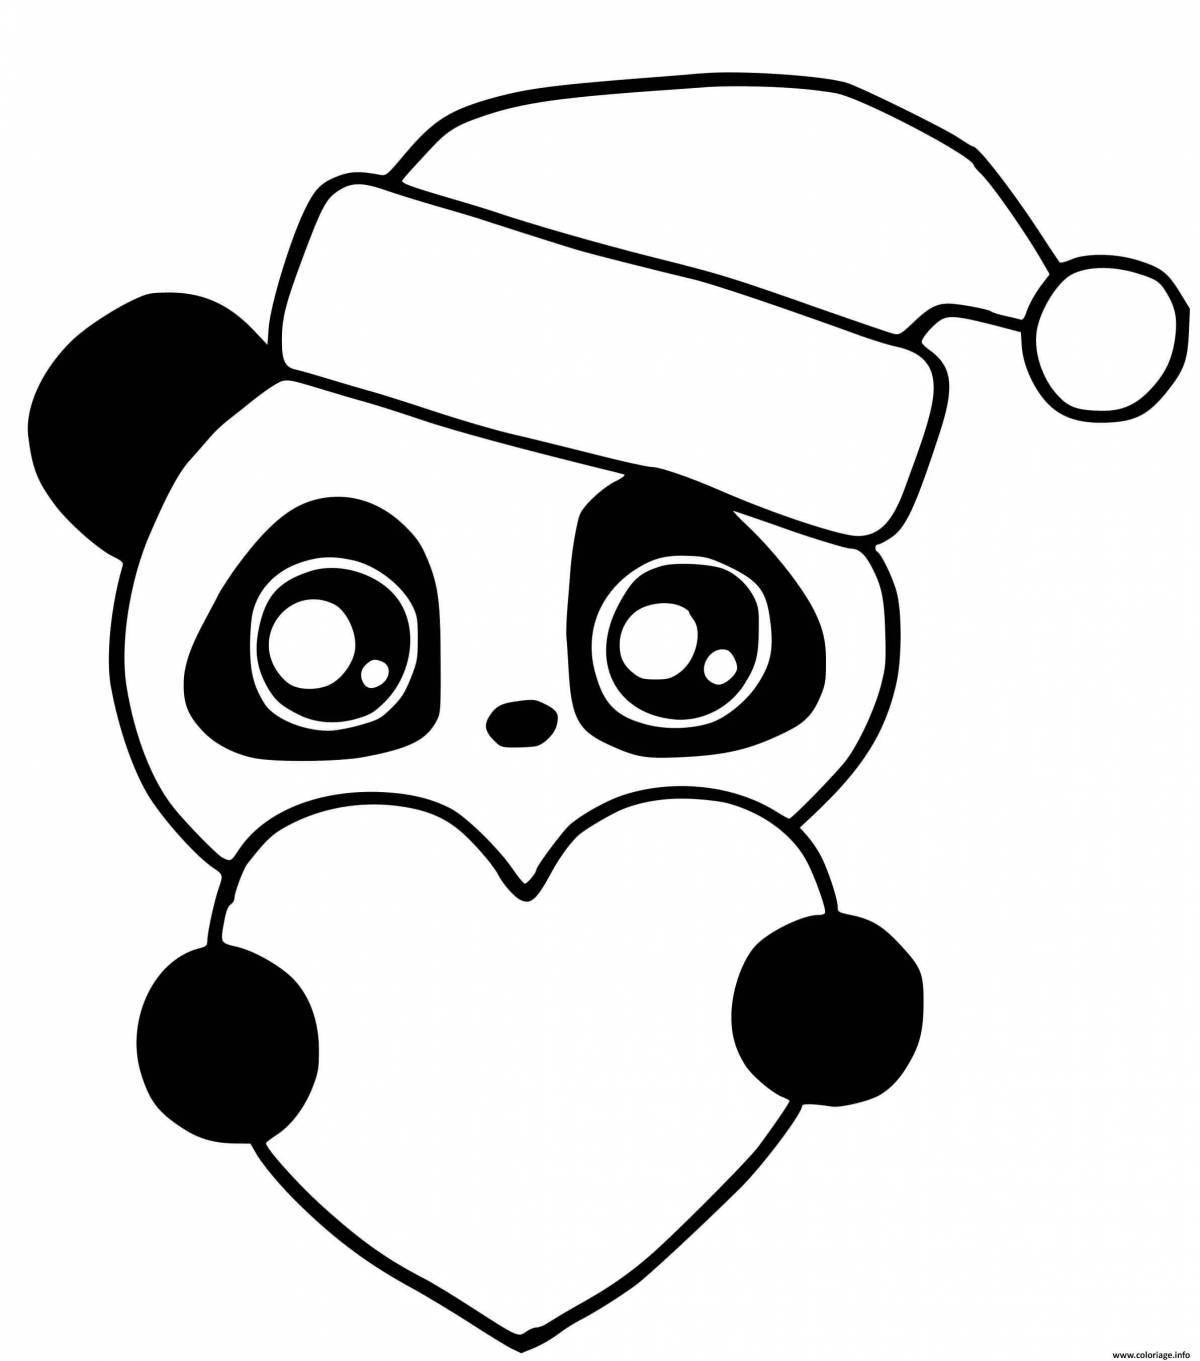 Cute pandas #11